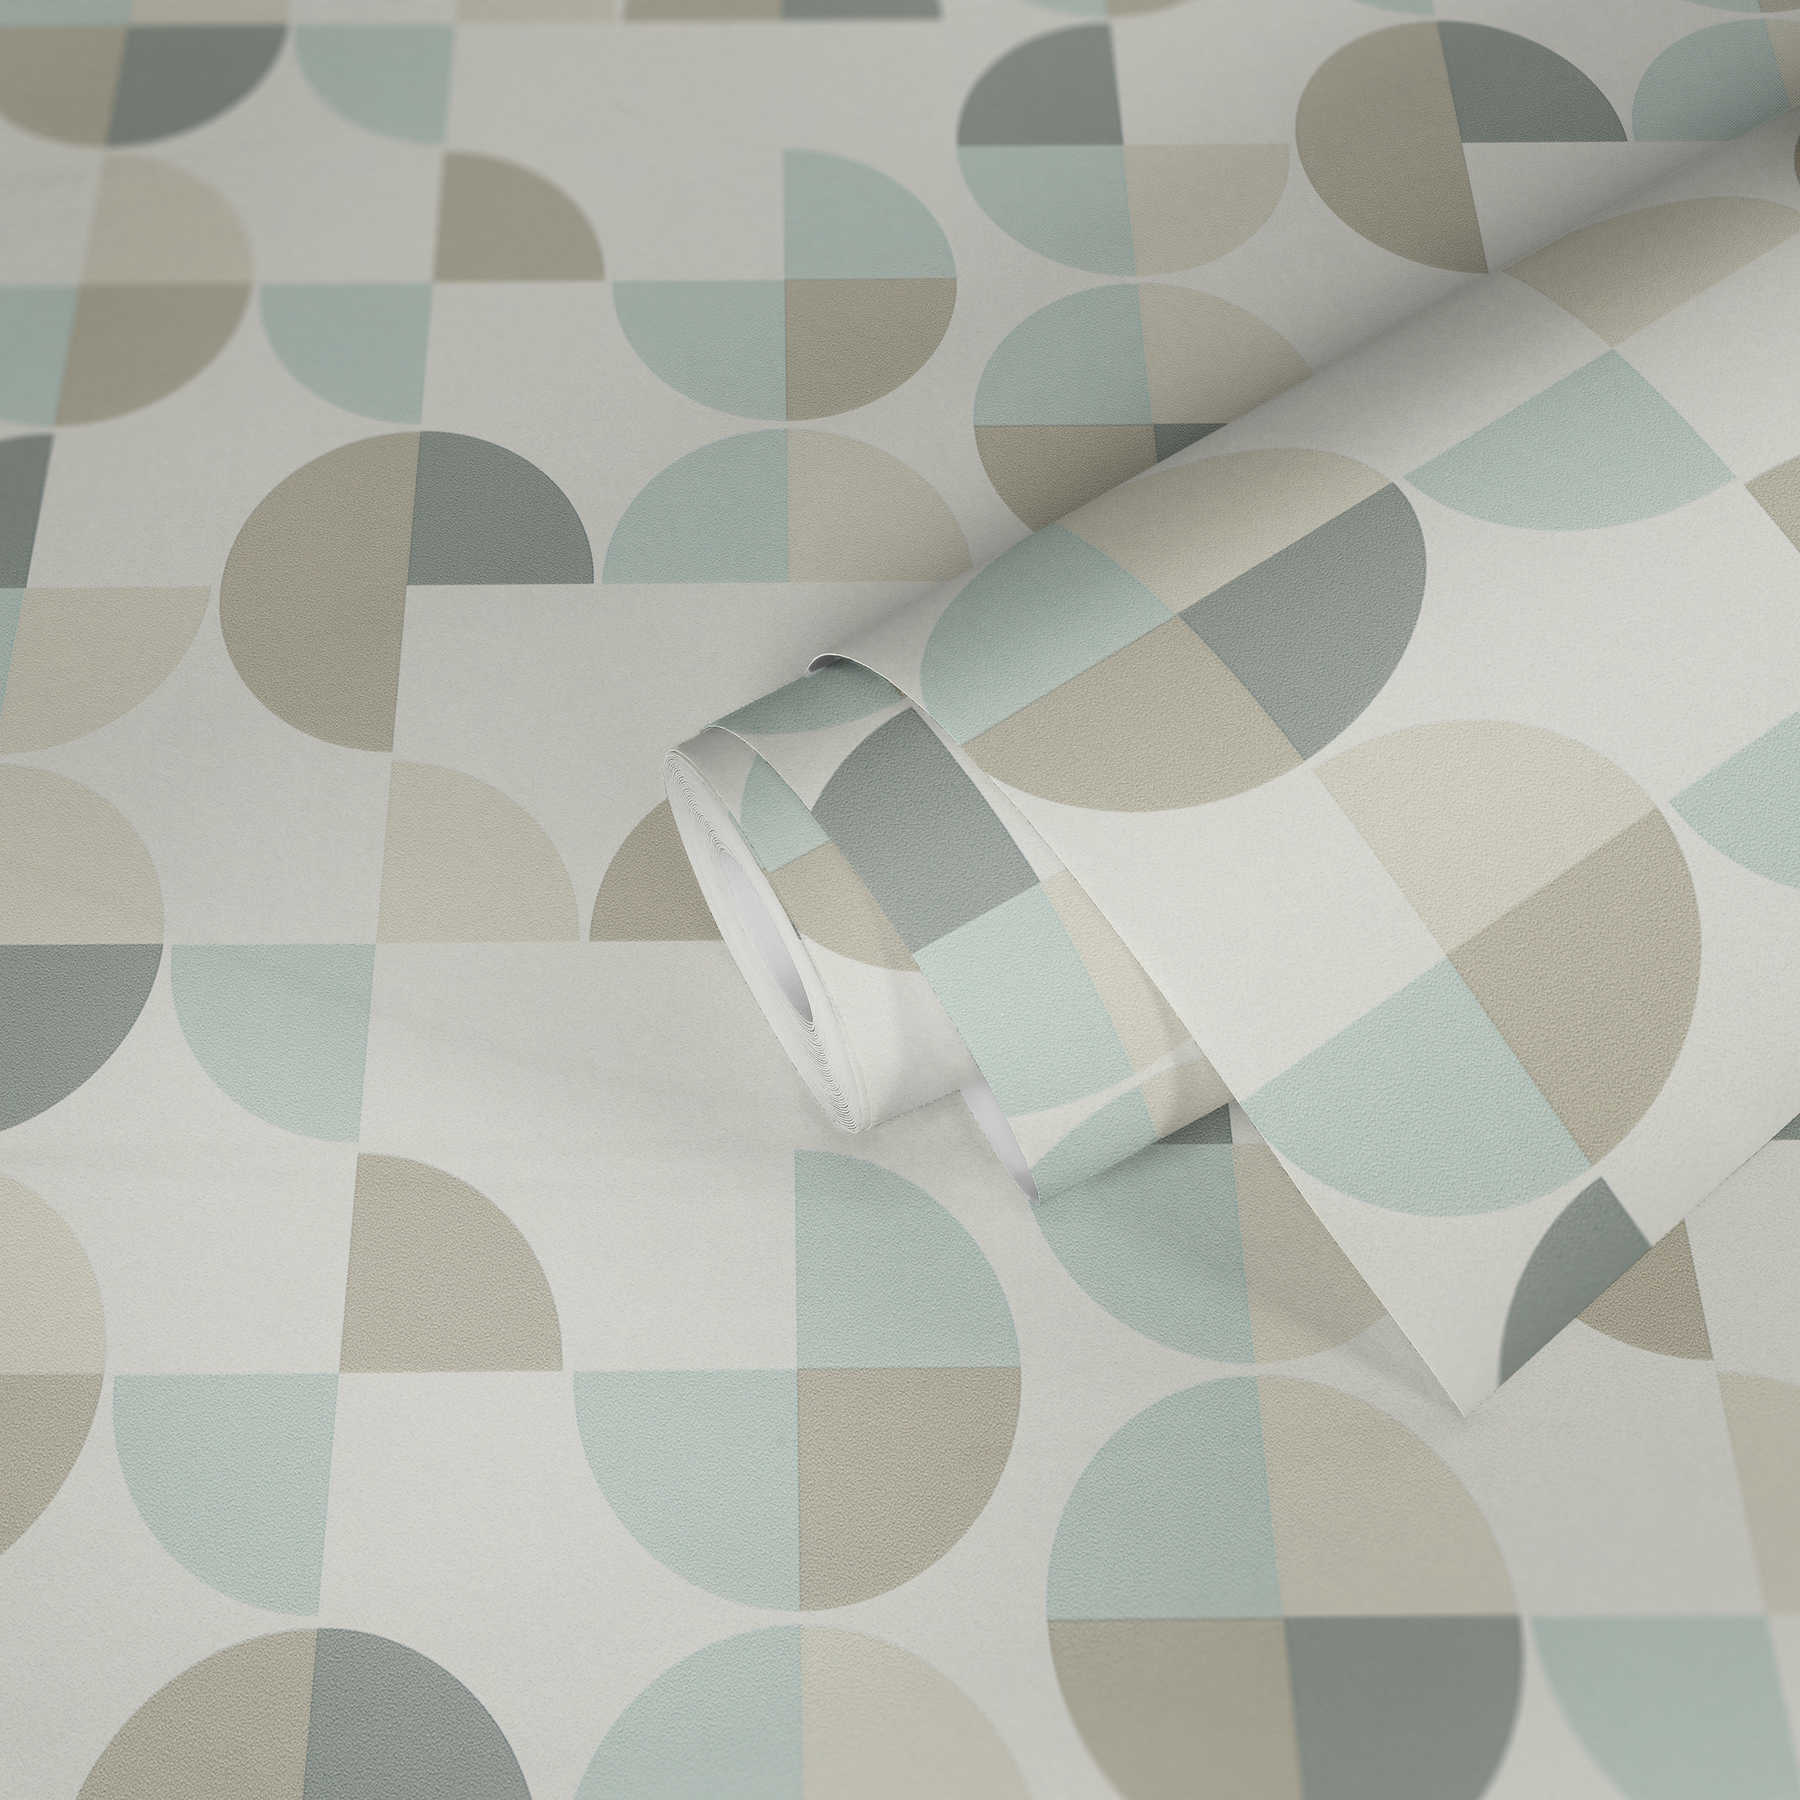             Geometrisch patroonbehang in Scandinavische stijl - blauw, grijs, beige
        